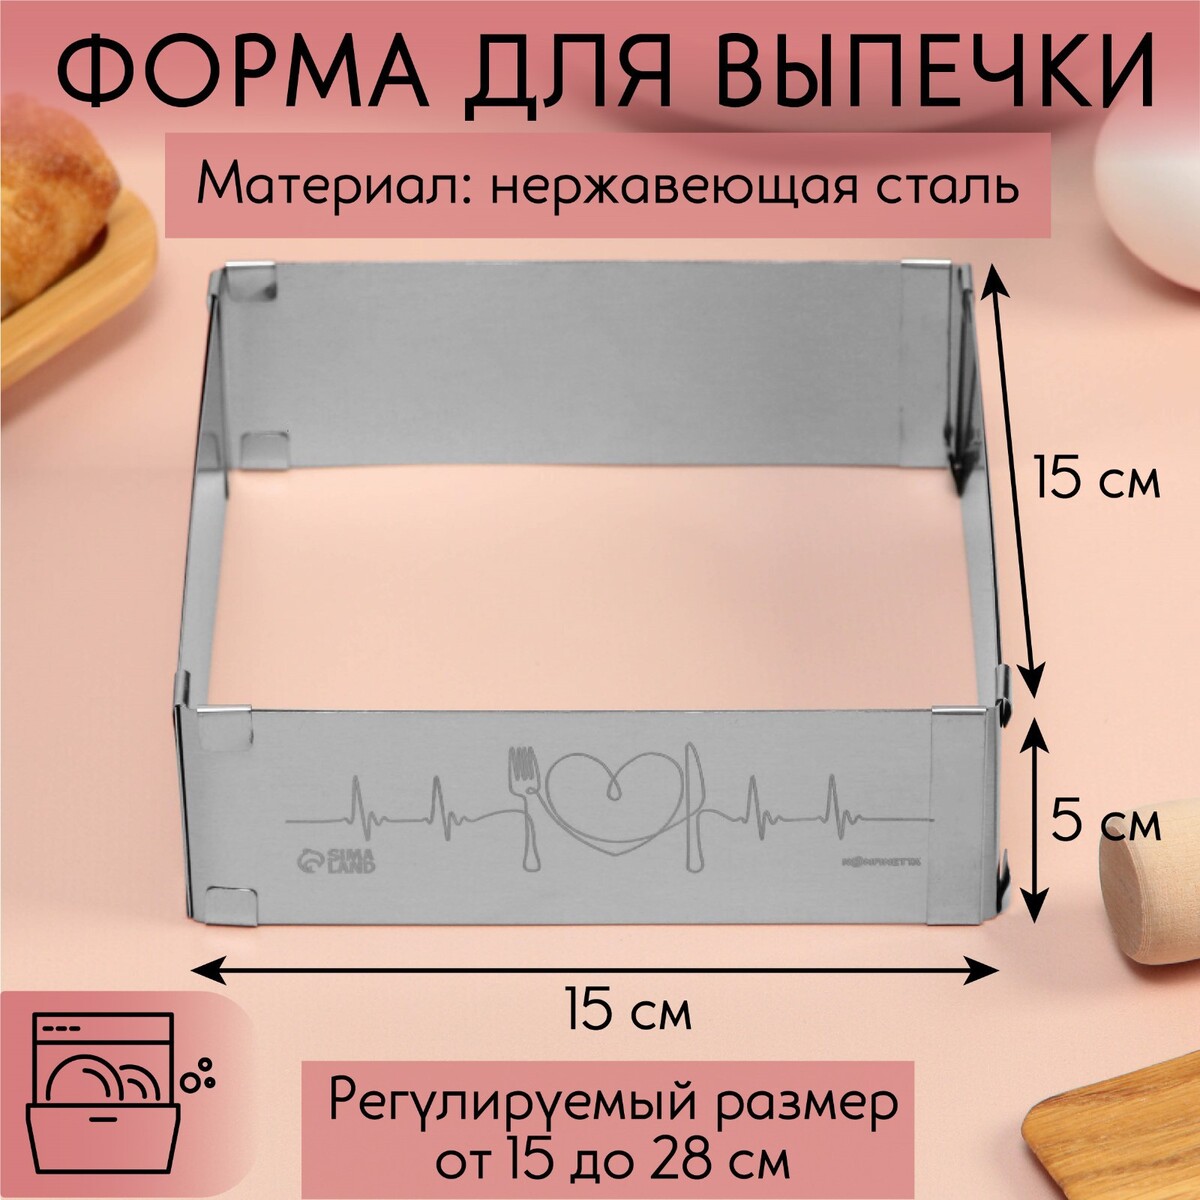 Форма для выпечки прямоугольная с регулировкой размера love, h-5 см, 15x15 - 28x28 см форма разъемная для выпечки кексов и тортов с регулировкой размера konfinetta 16 30 см